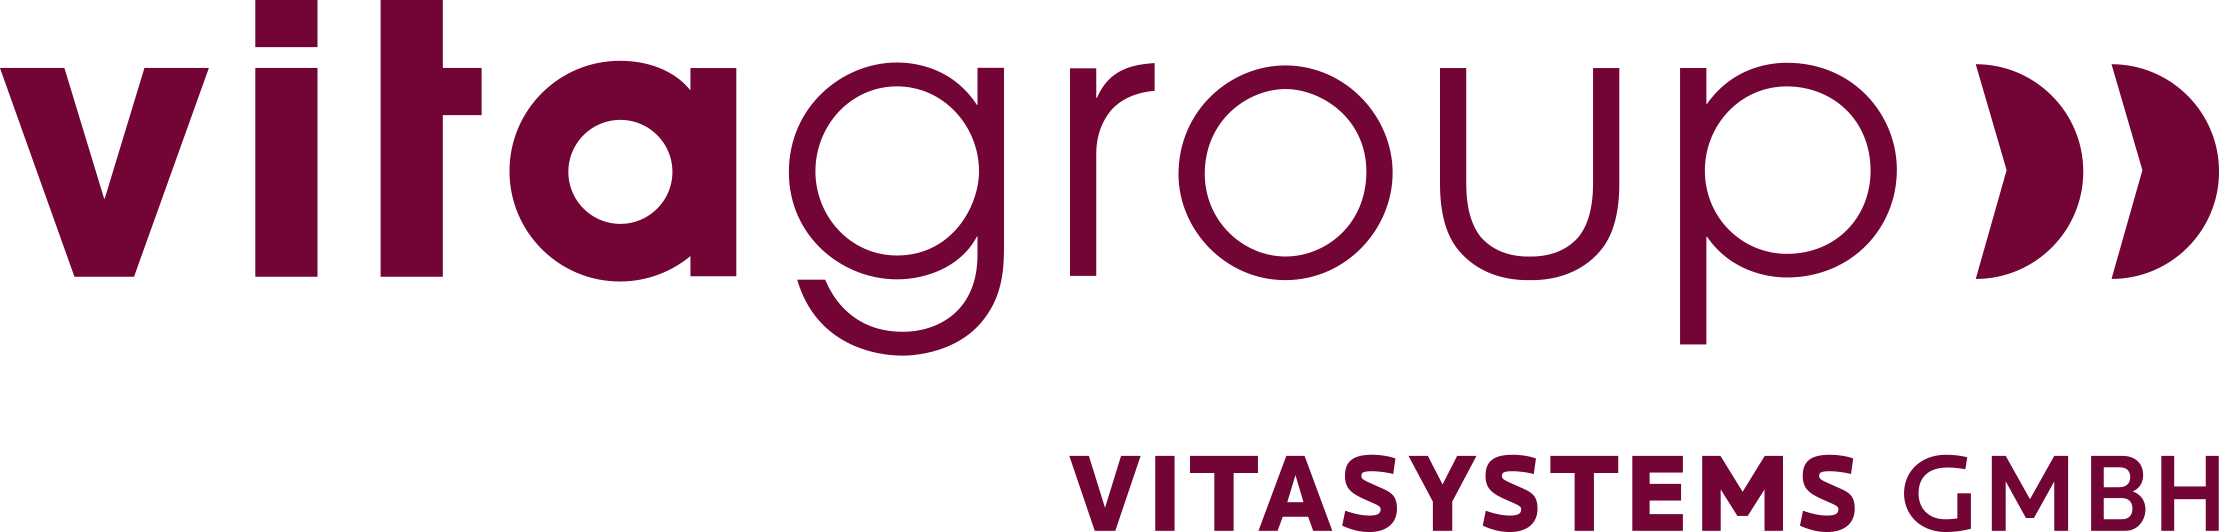 vitagroup vitasystems